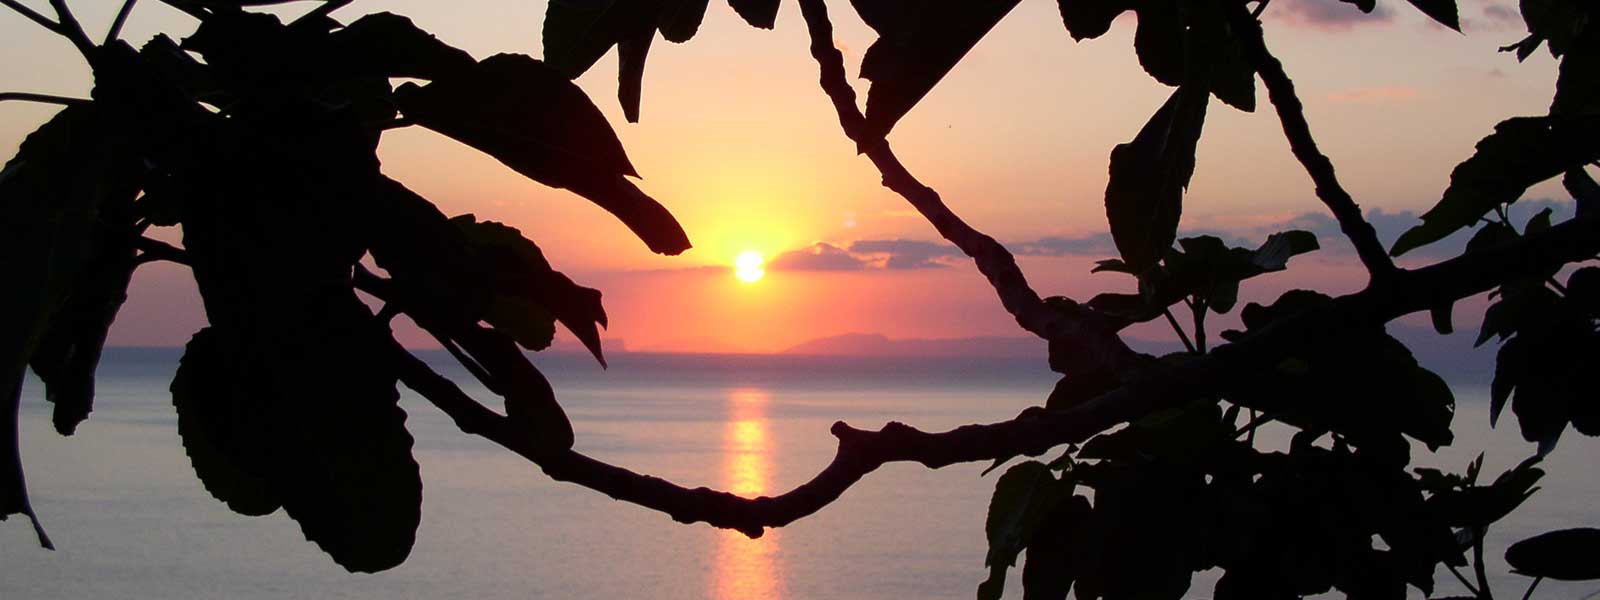 Wenn bei Capri die Sonne untergeht